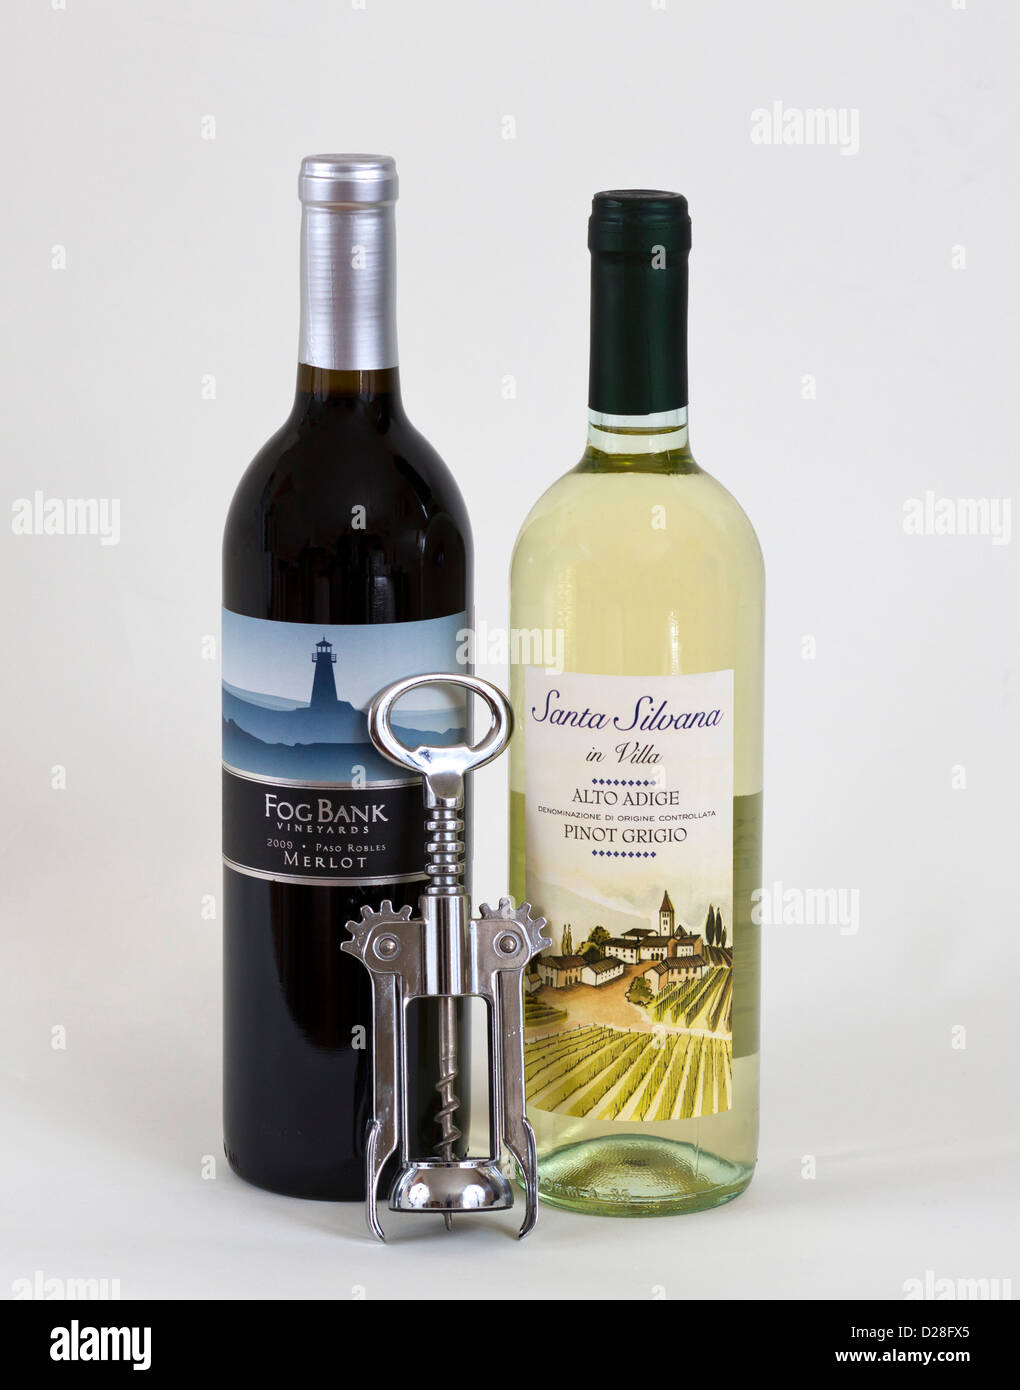 Zwei Flaschen Wein, eine weiße und eine rote mit Korkenzieher. Stockfoto